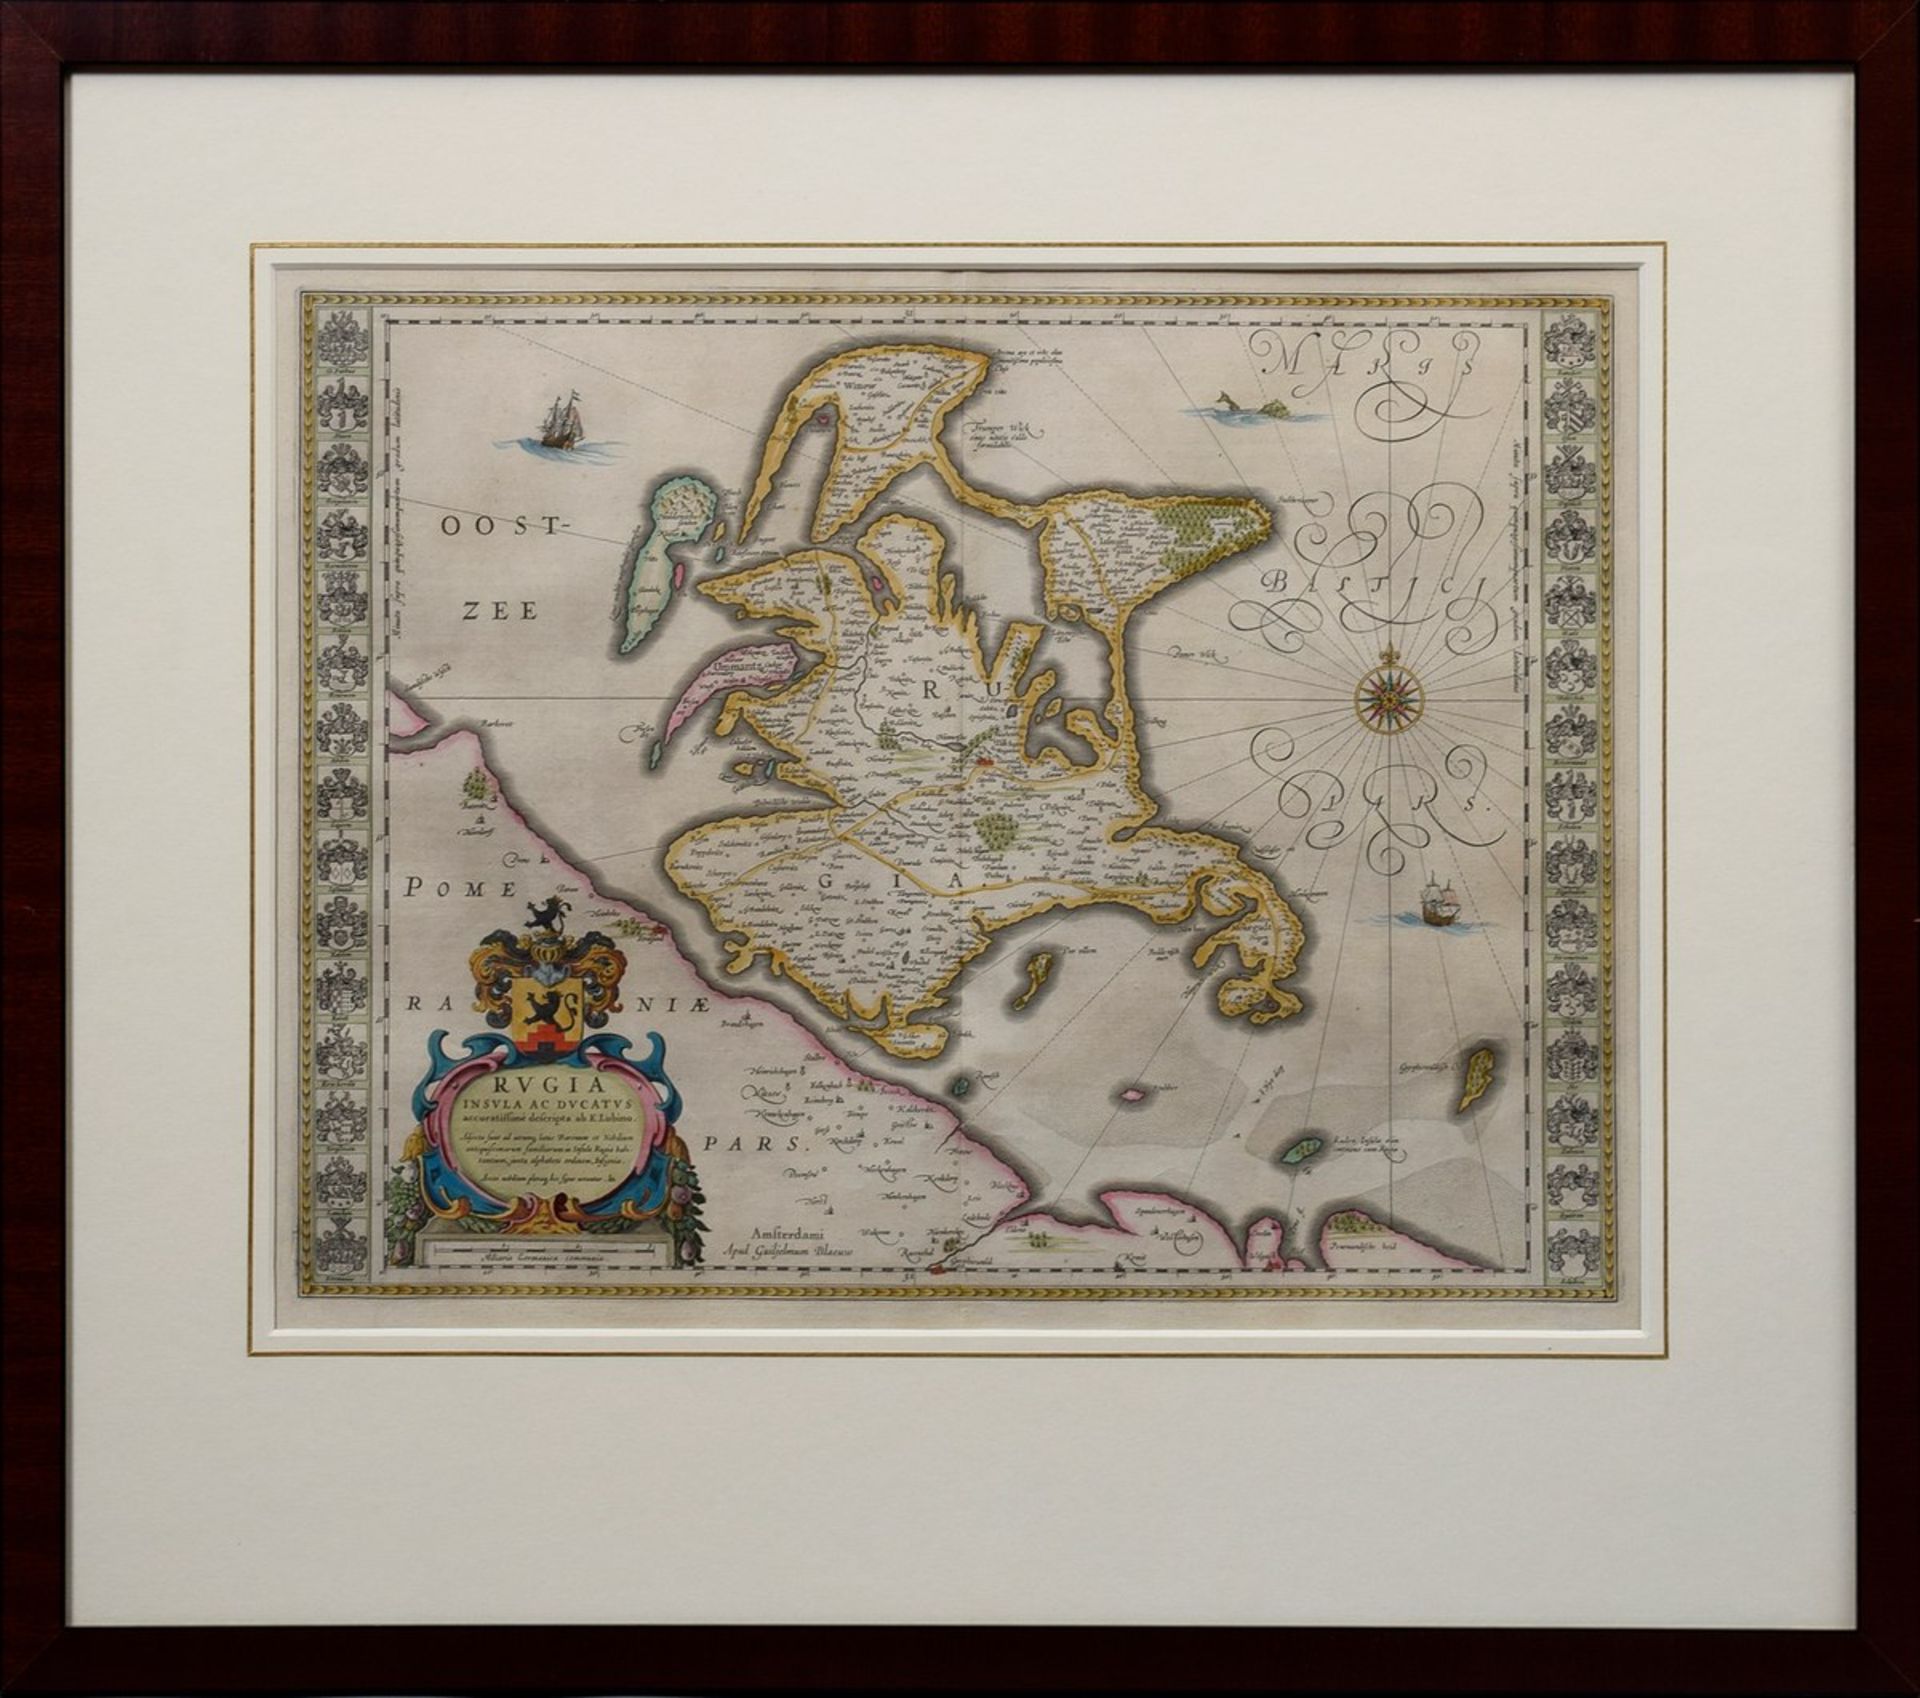 Blaeu, Willem (1571-1638) "Rugia Insula ac Ducatus accurassimime descripta" (Karte der Insel - Bild 2 aus 6